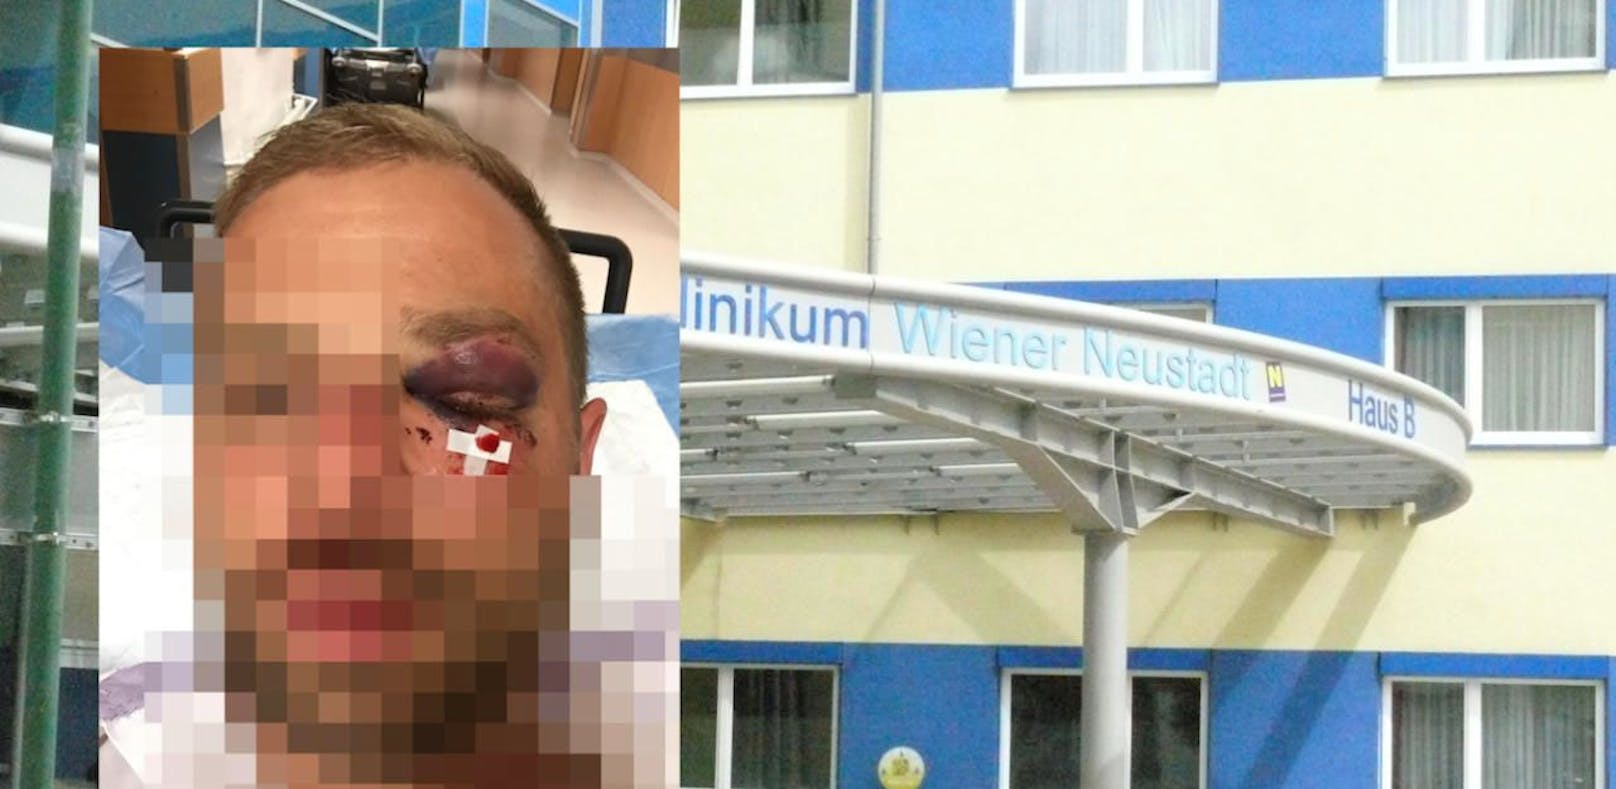 Justizbeamter (32) landete schwer verletzt im Spital Wr. Neustadt